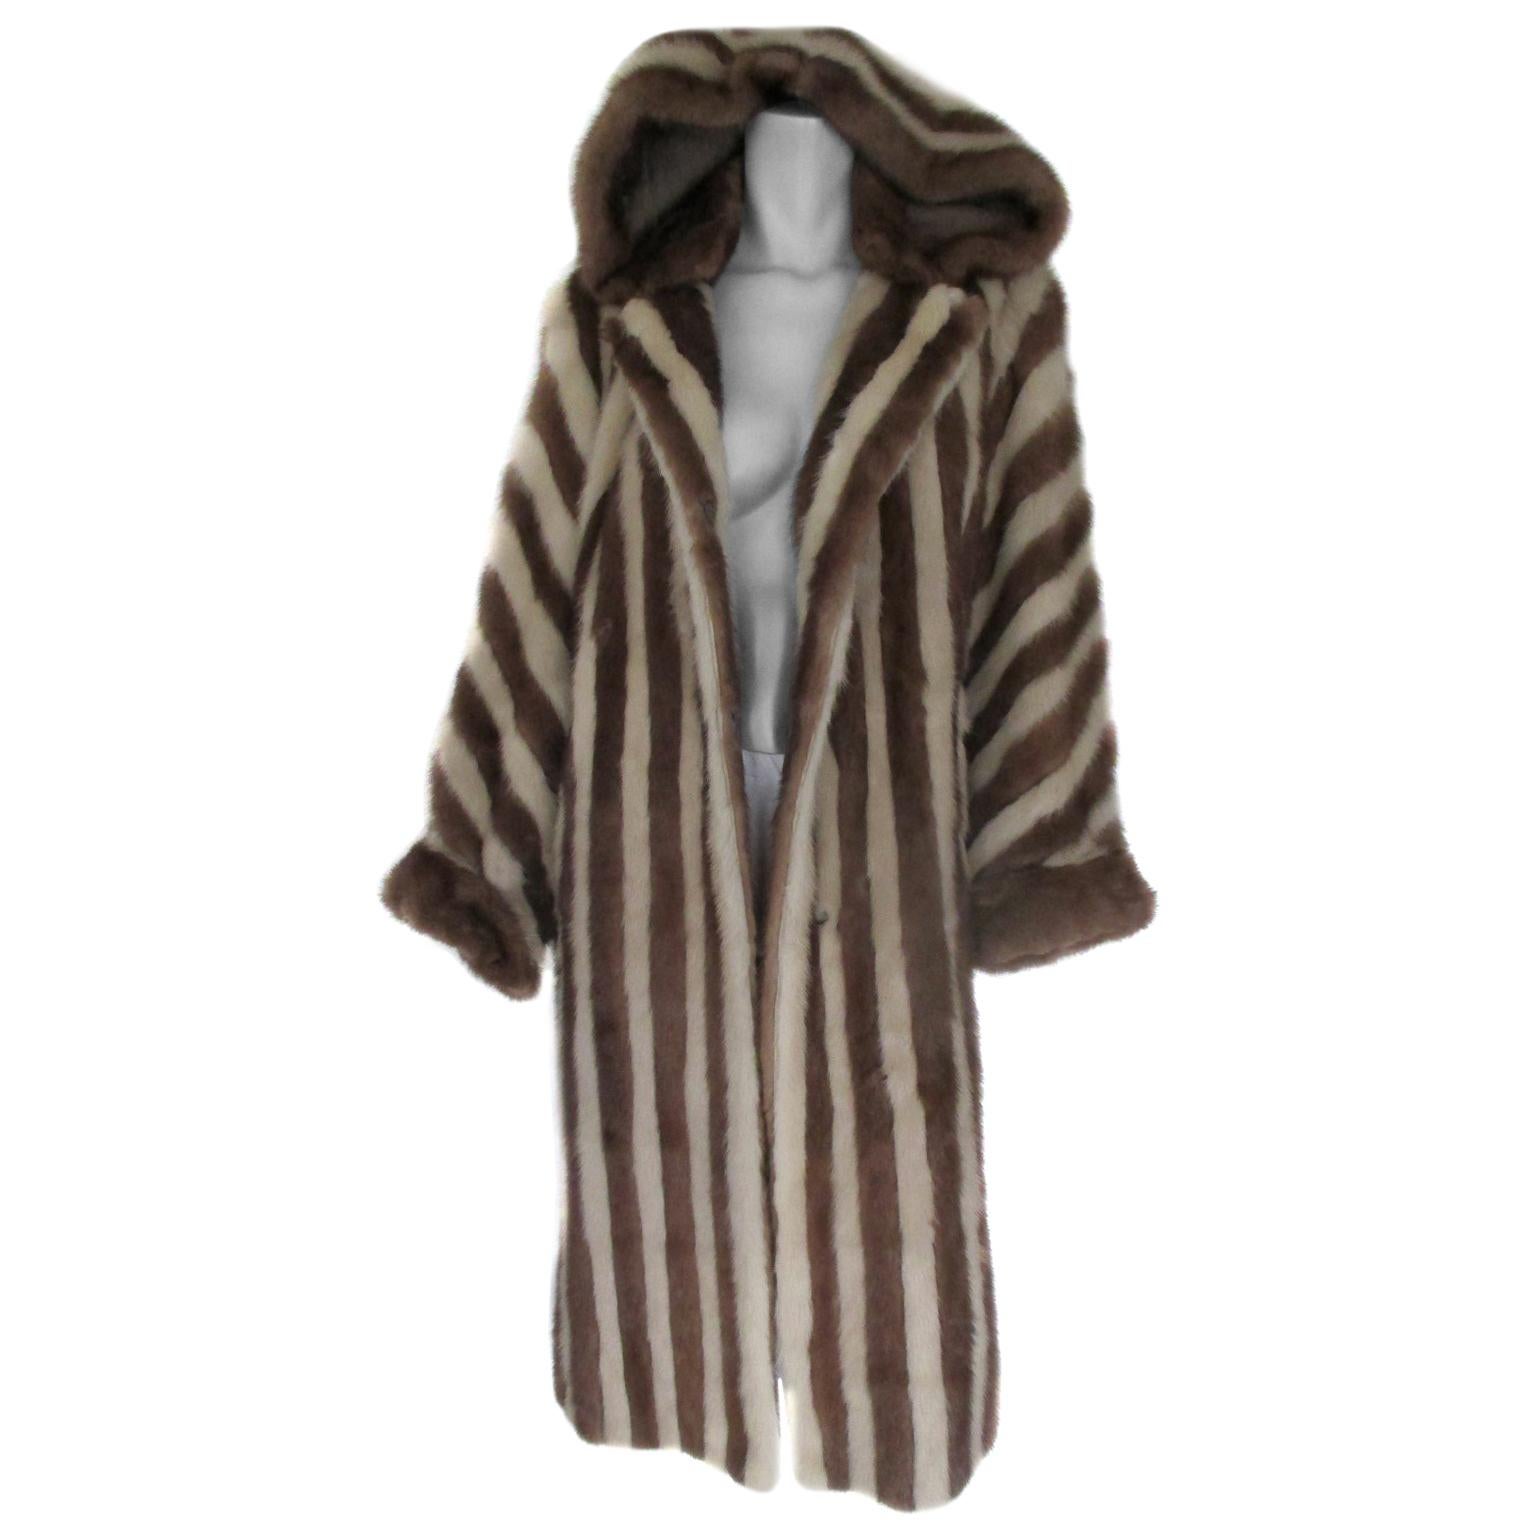  Mink fur coat with hood